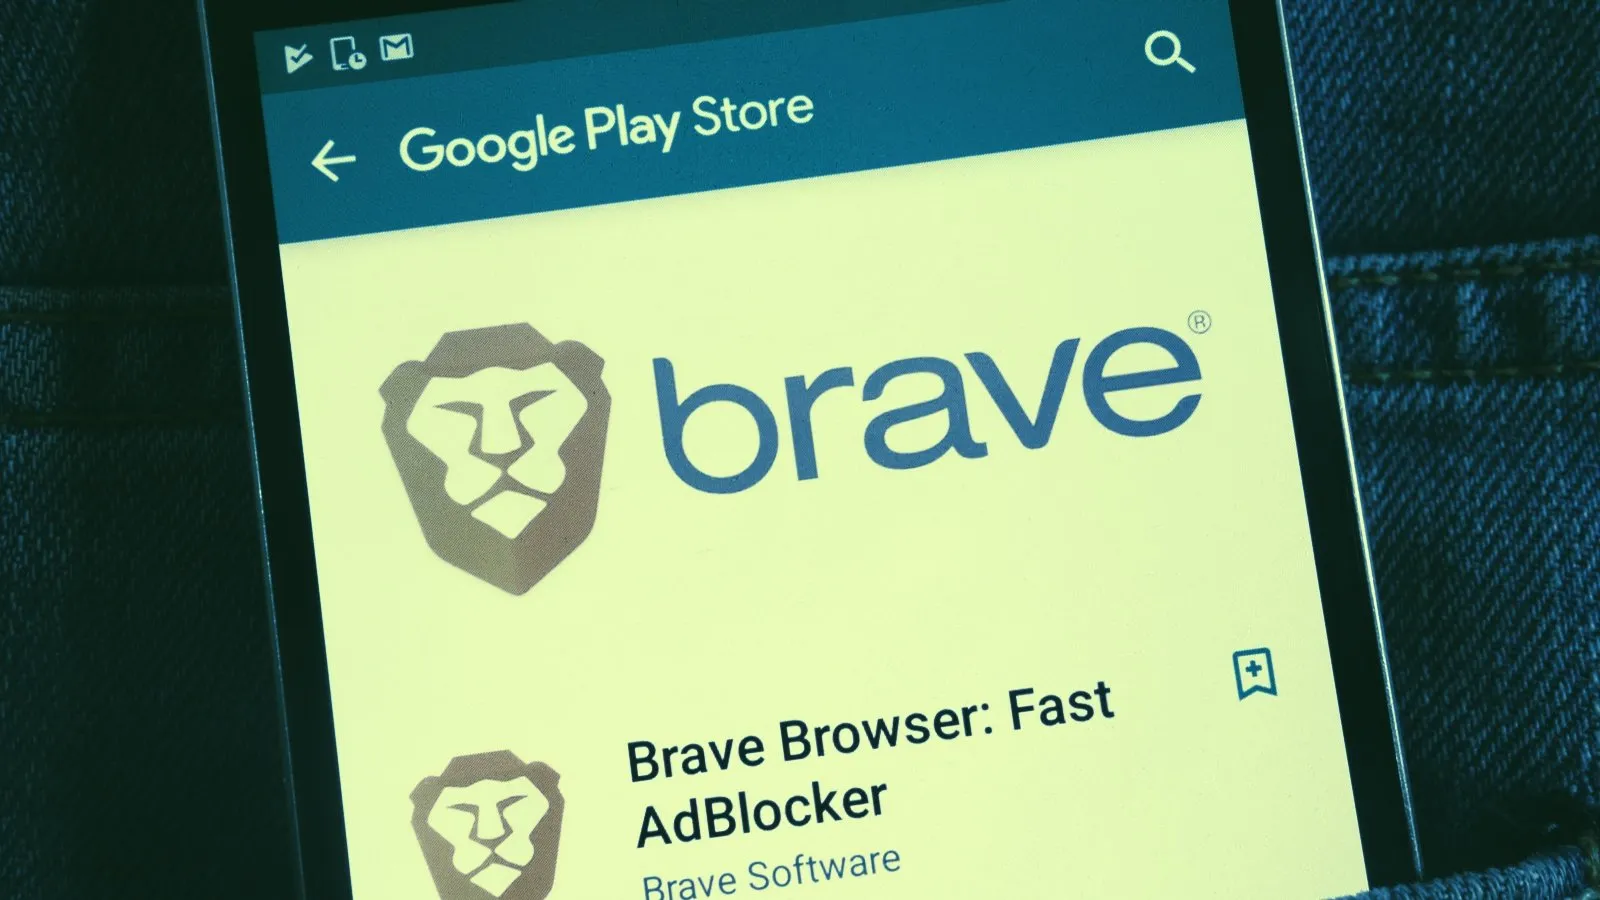 Google Play Pass: a grande novidade da Play Store está a chegar! - Leak